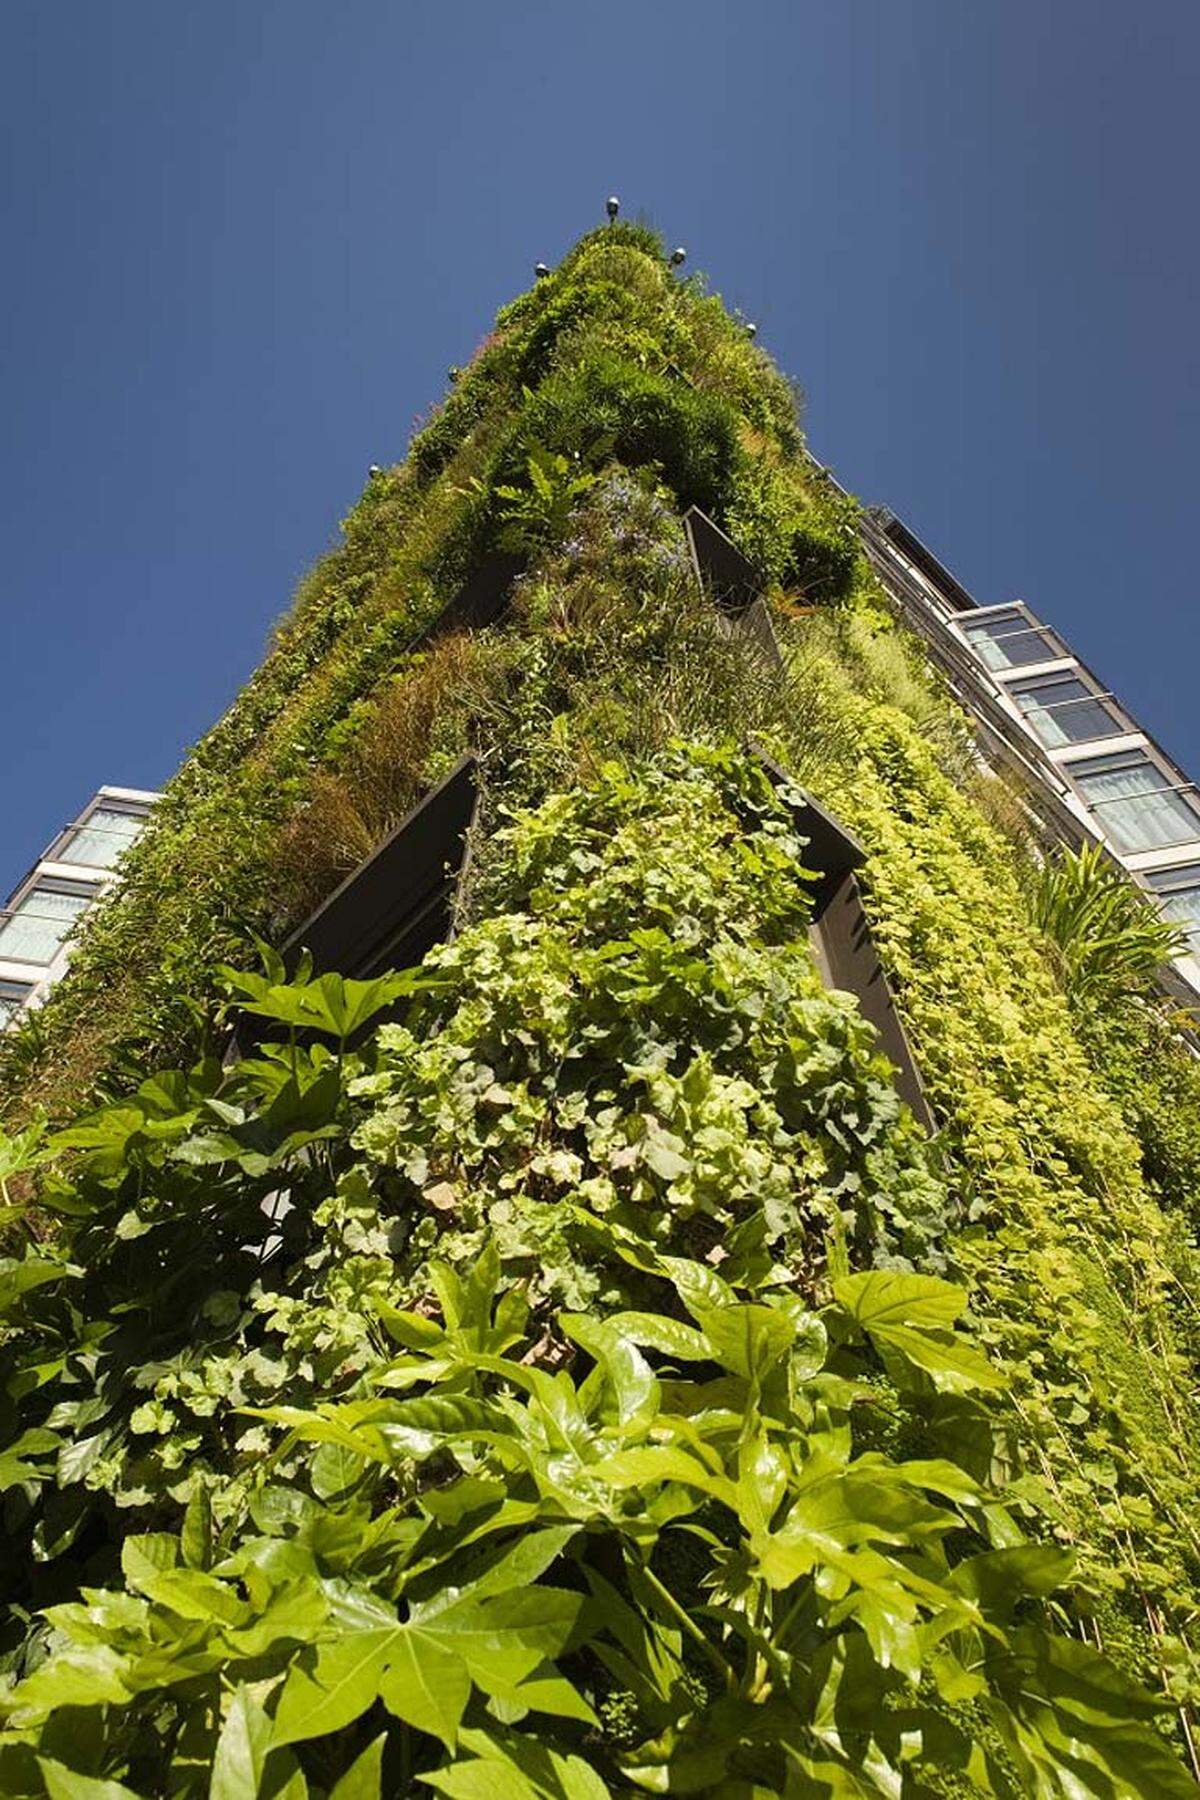 "Die Chelsea Fringe steht für eine neue Generation von Gärten," sagt ihr Begründer Tim Richardson, Gärtner und Kolumnist, gegenüber der "Zeit".